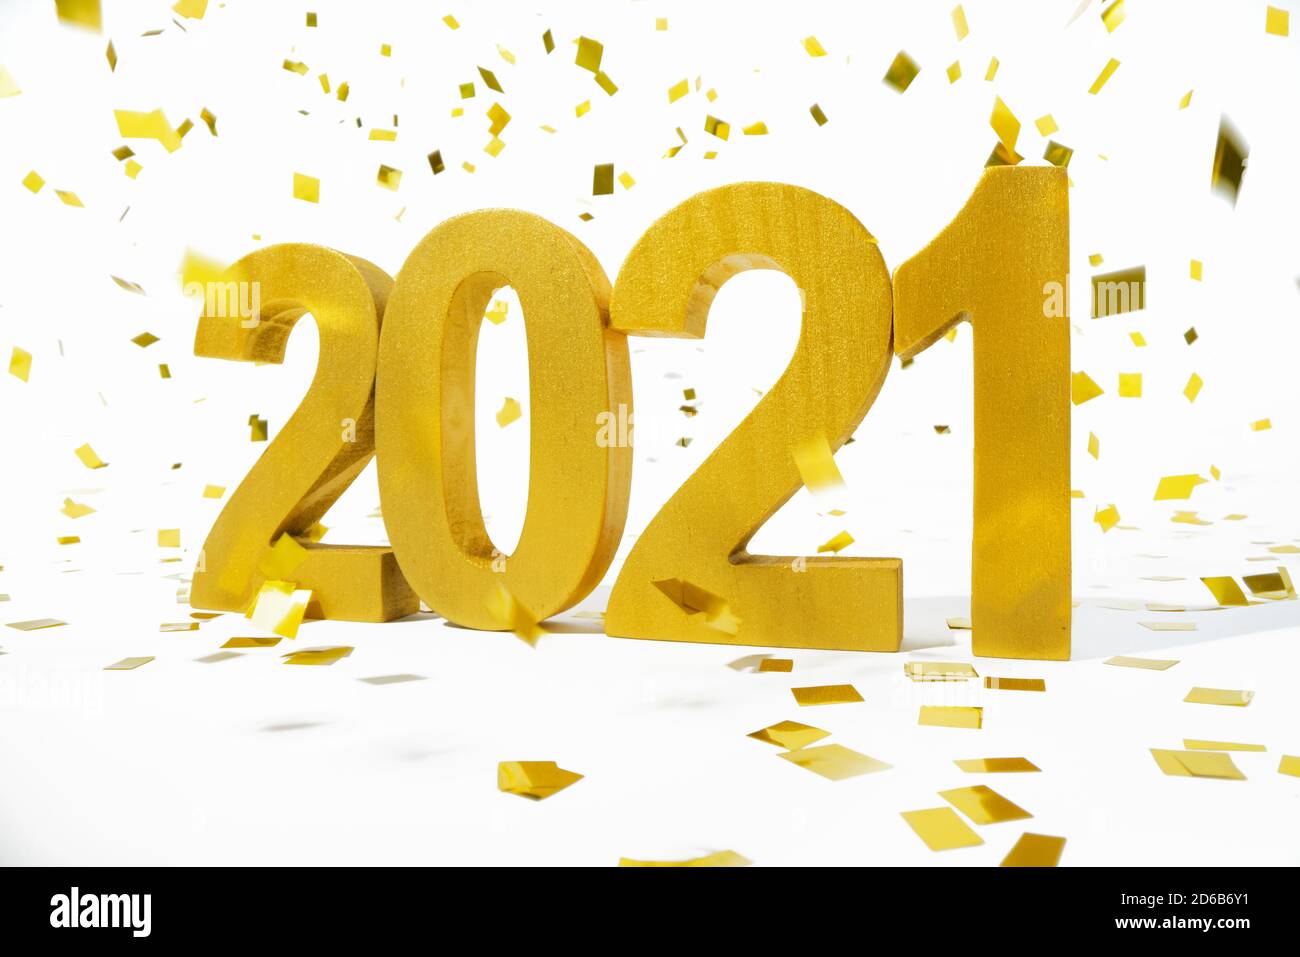 Bonne année 2021 avec des confettis dorés Banque D'Images